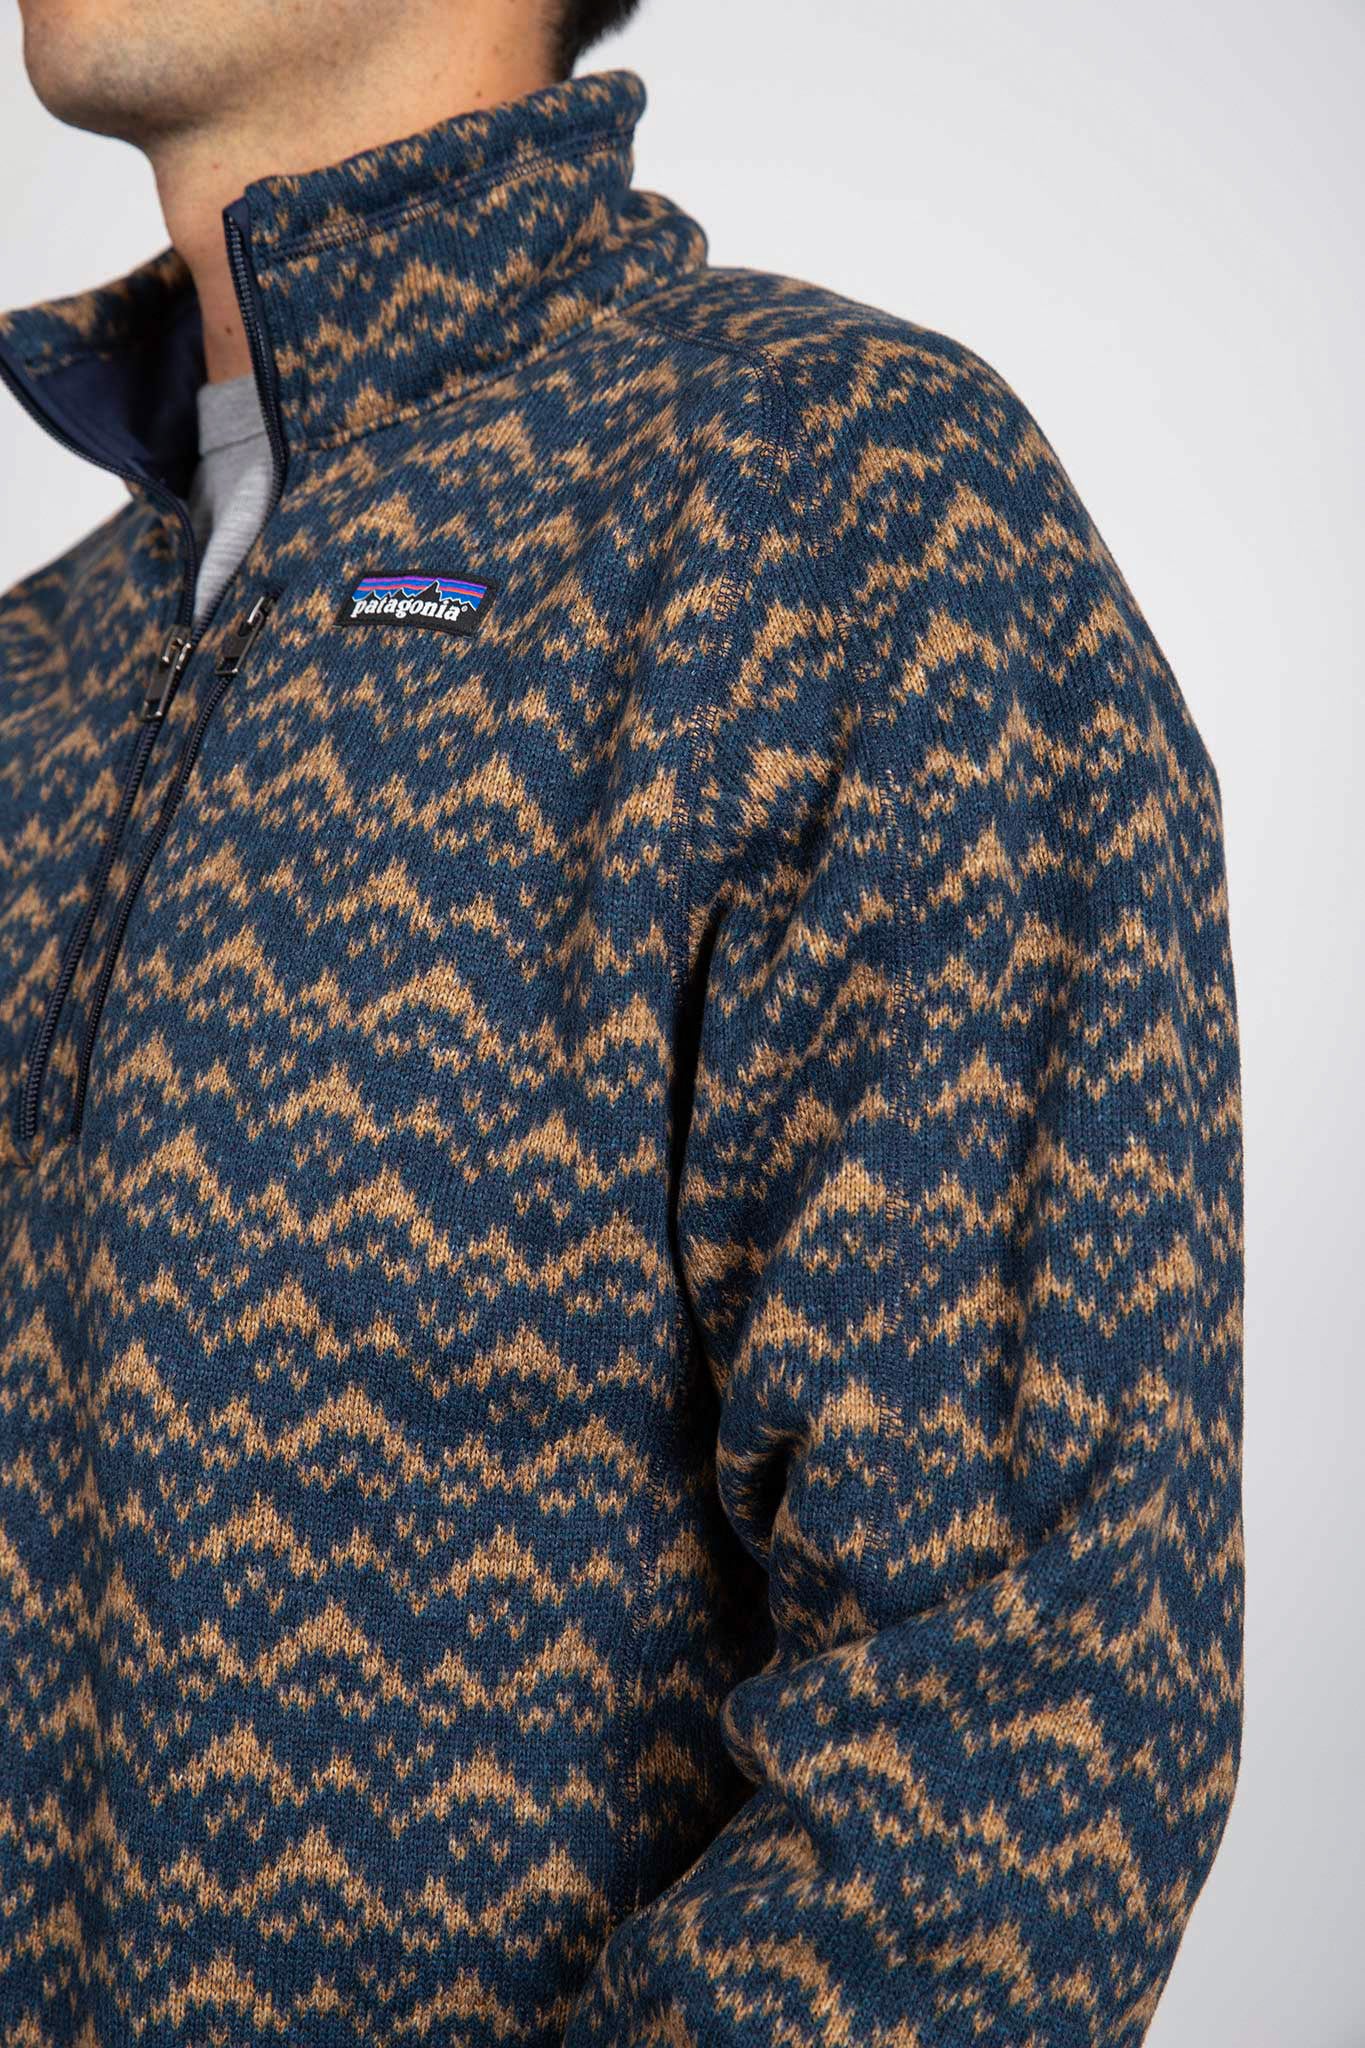 Better Sweater® 1/4-Zip Fleece Jackets Patagonia   